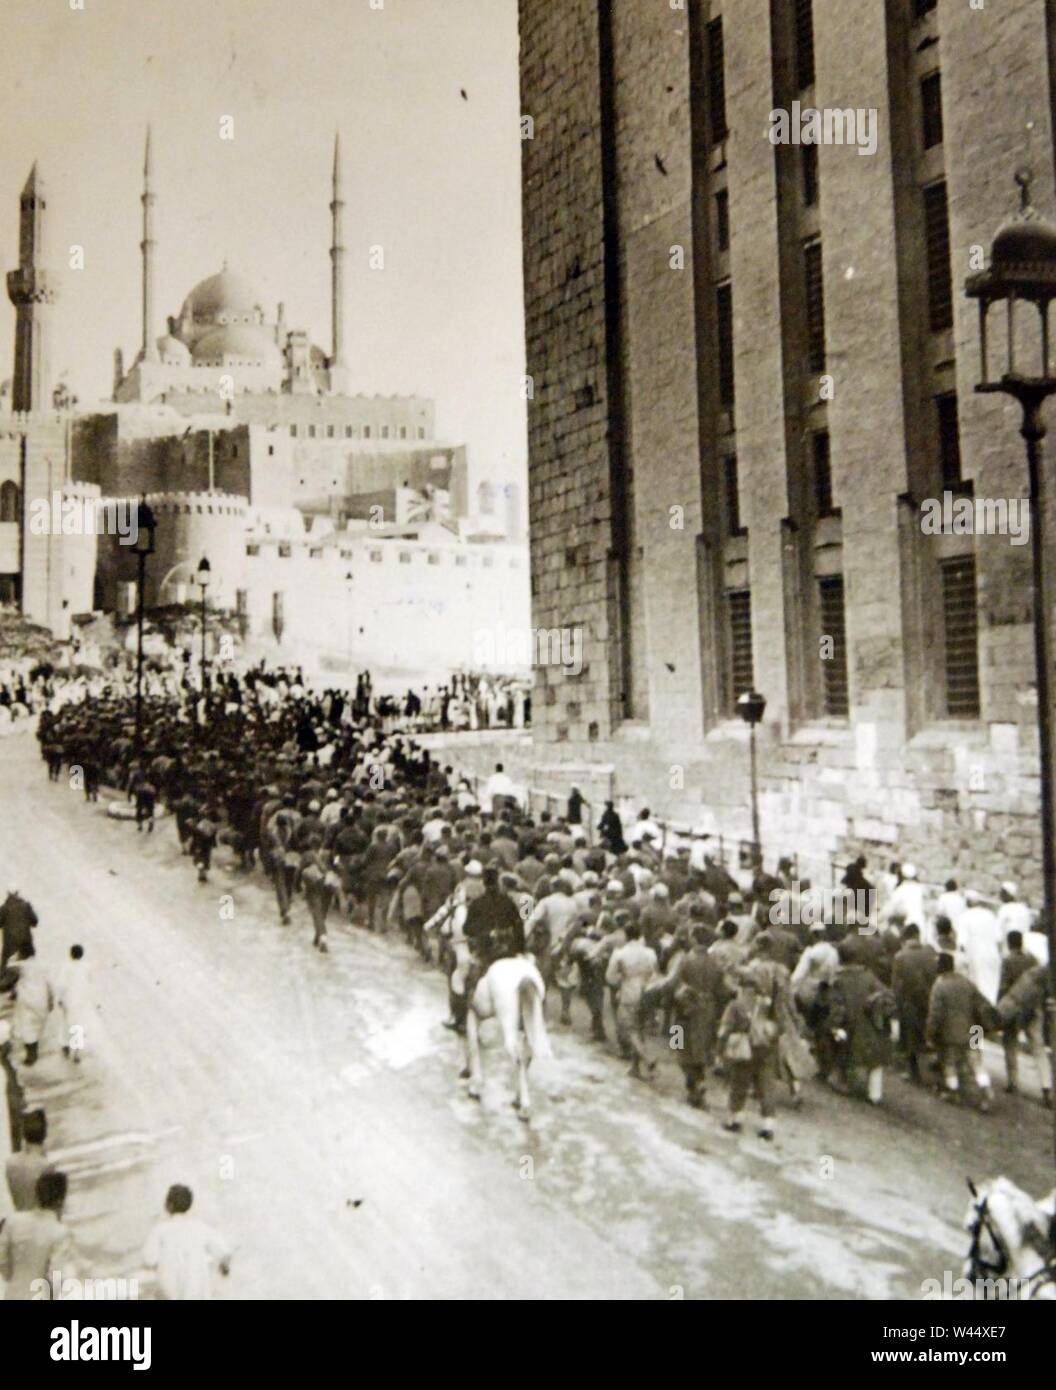 Spalte der Achse Häftlinge gefangen in Libyen marschieren in der Nähe der Zitadelle von Kairo, Ägypten, WWII (37245567345). Stockfoto